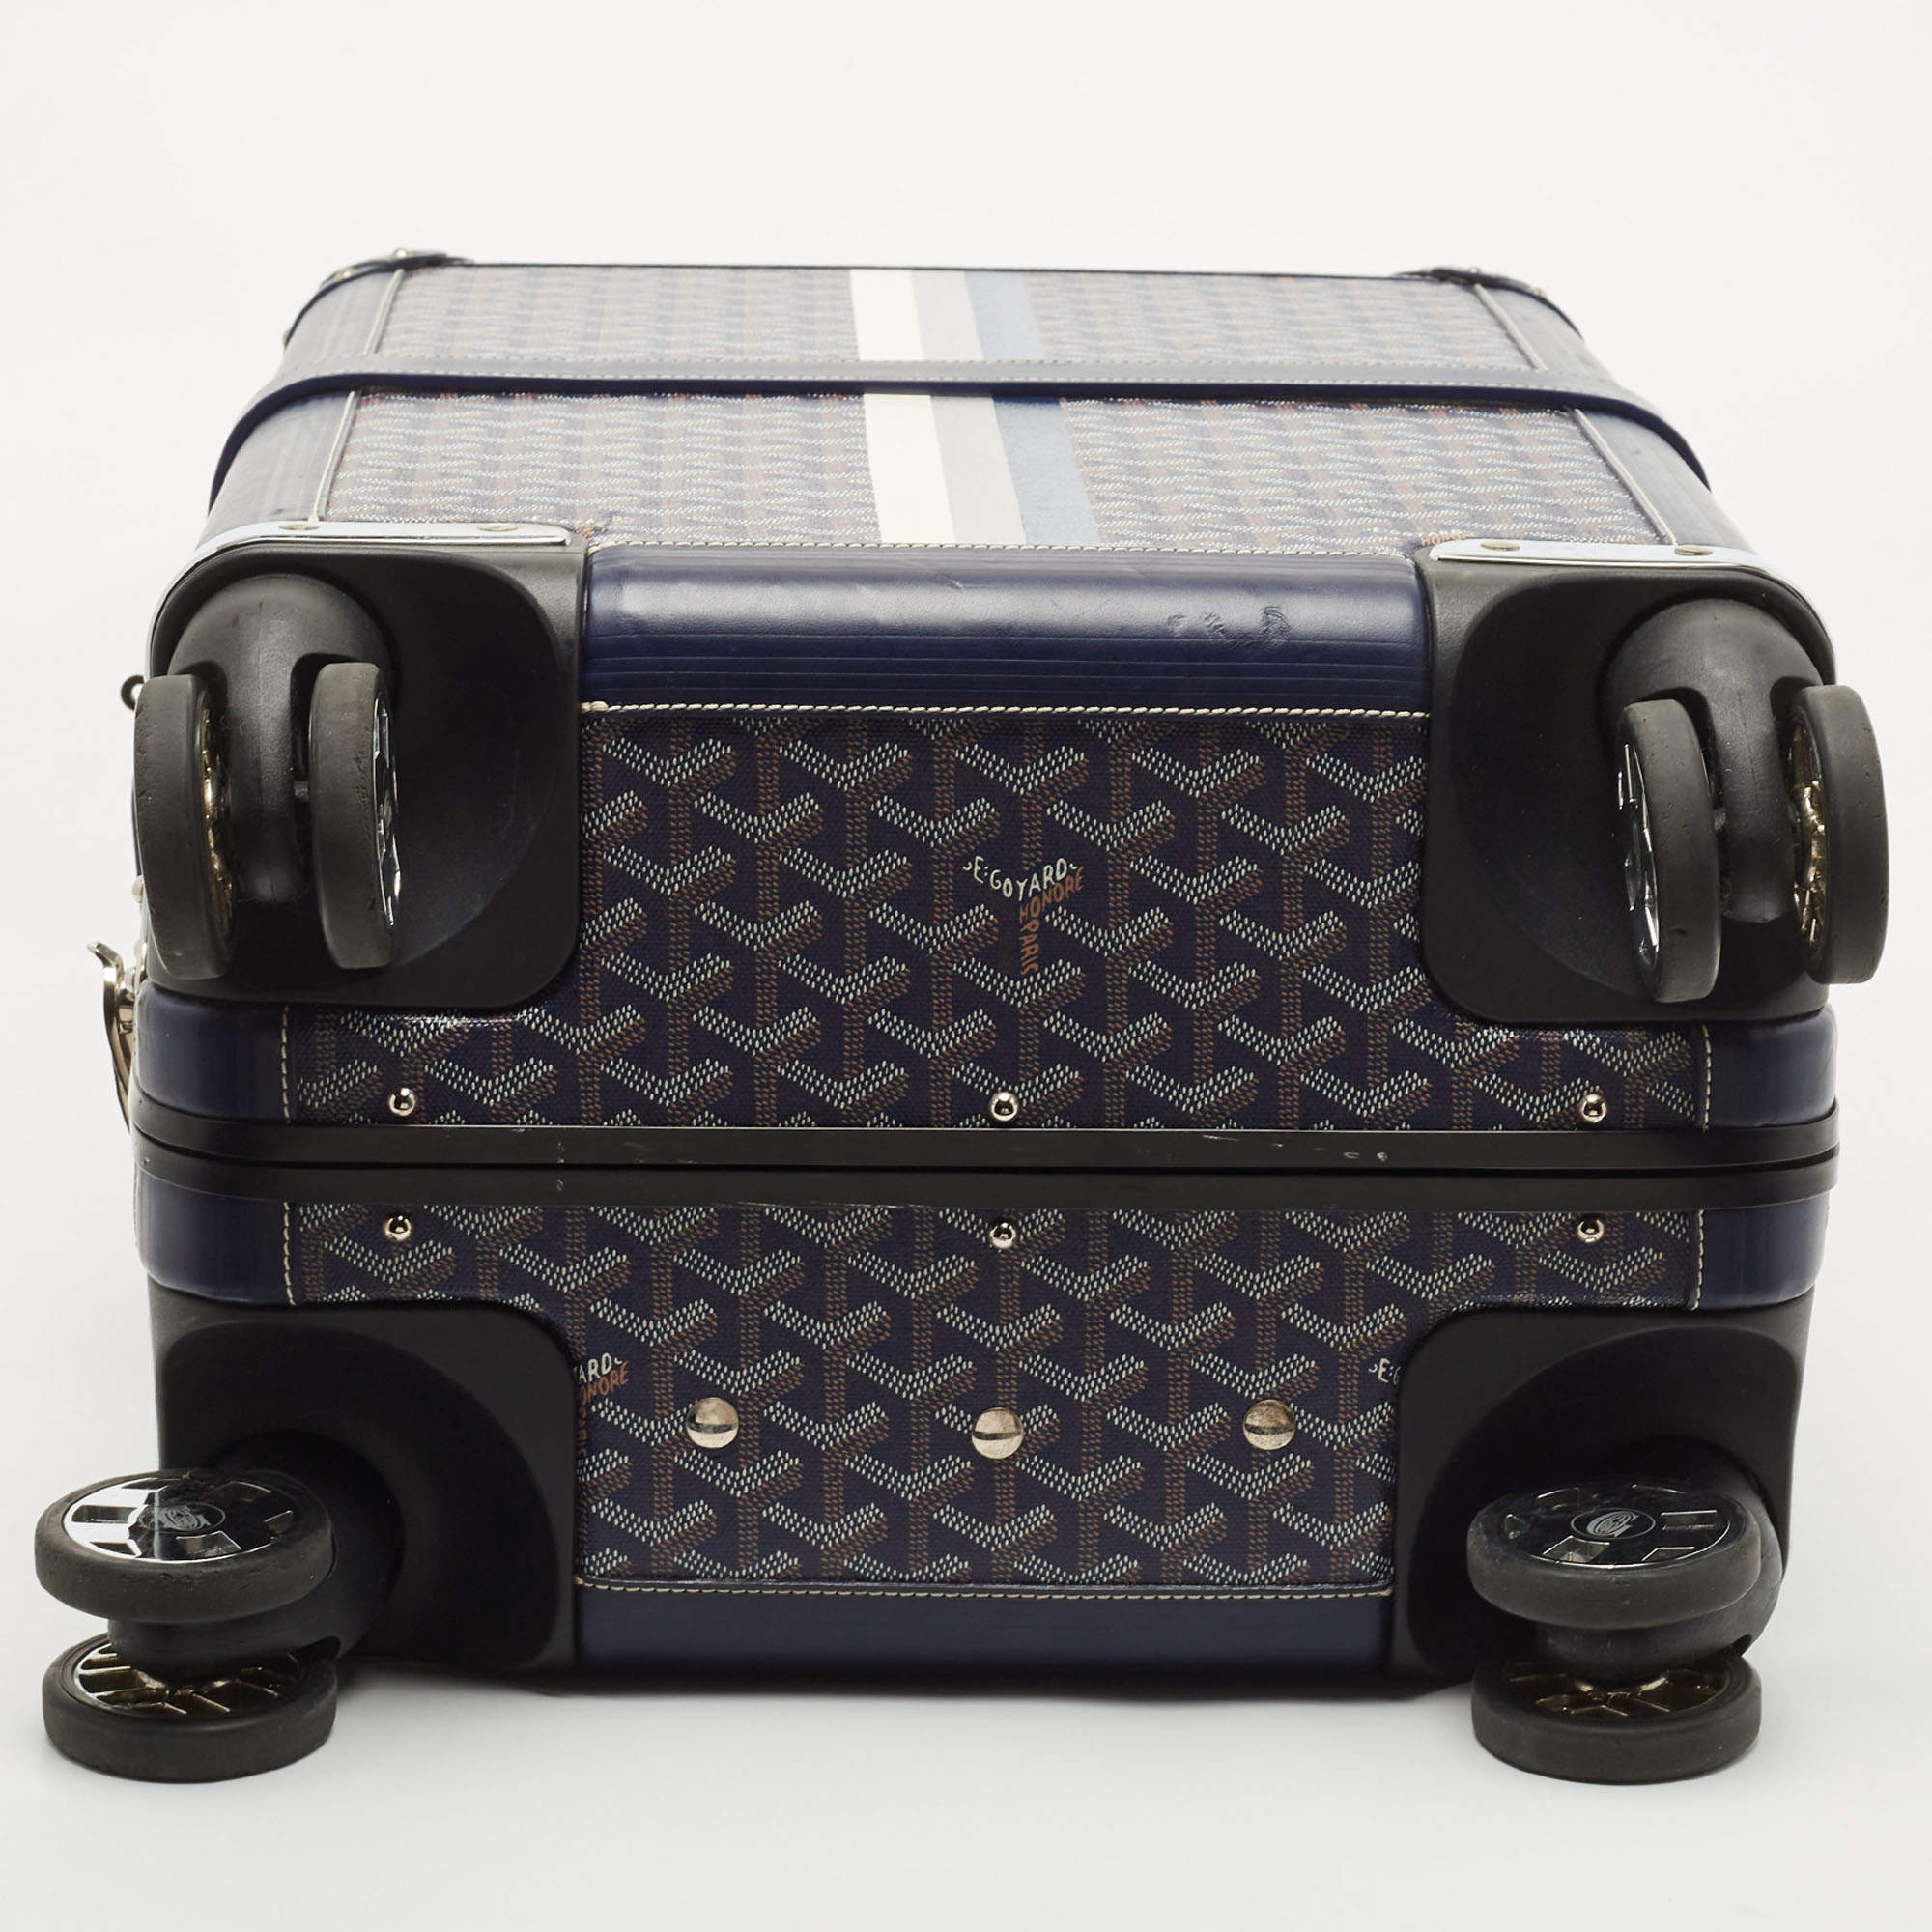 Goyard Travel Luggage for sale